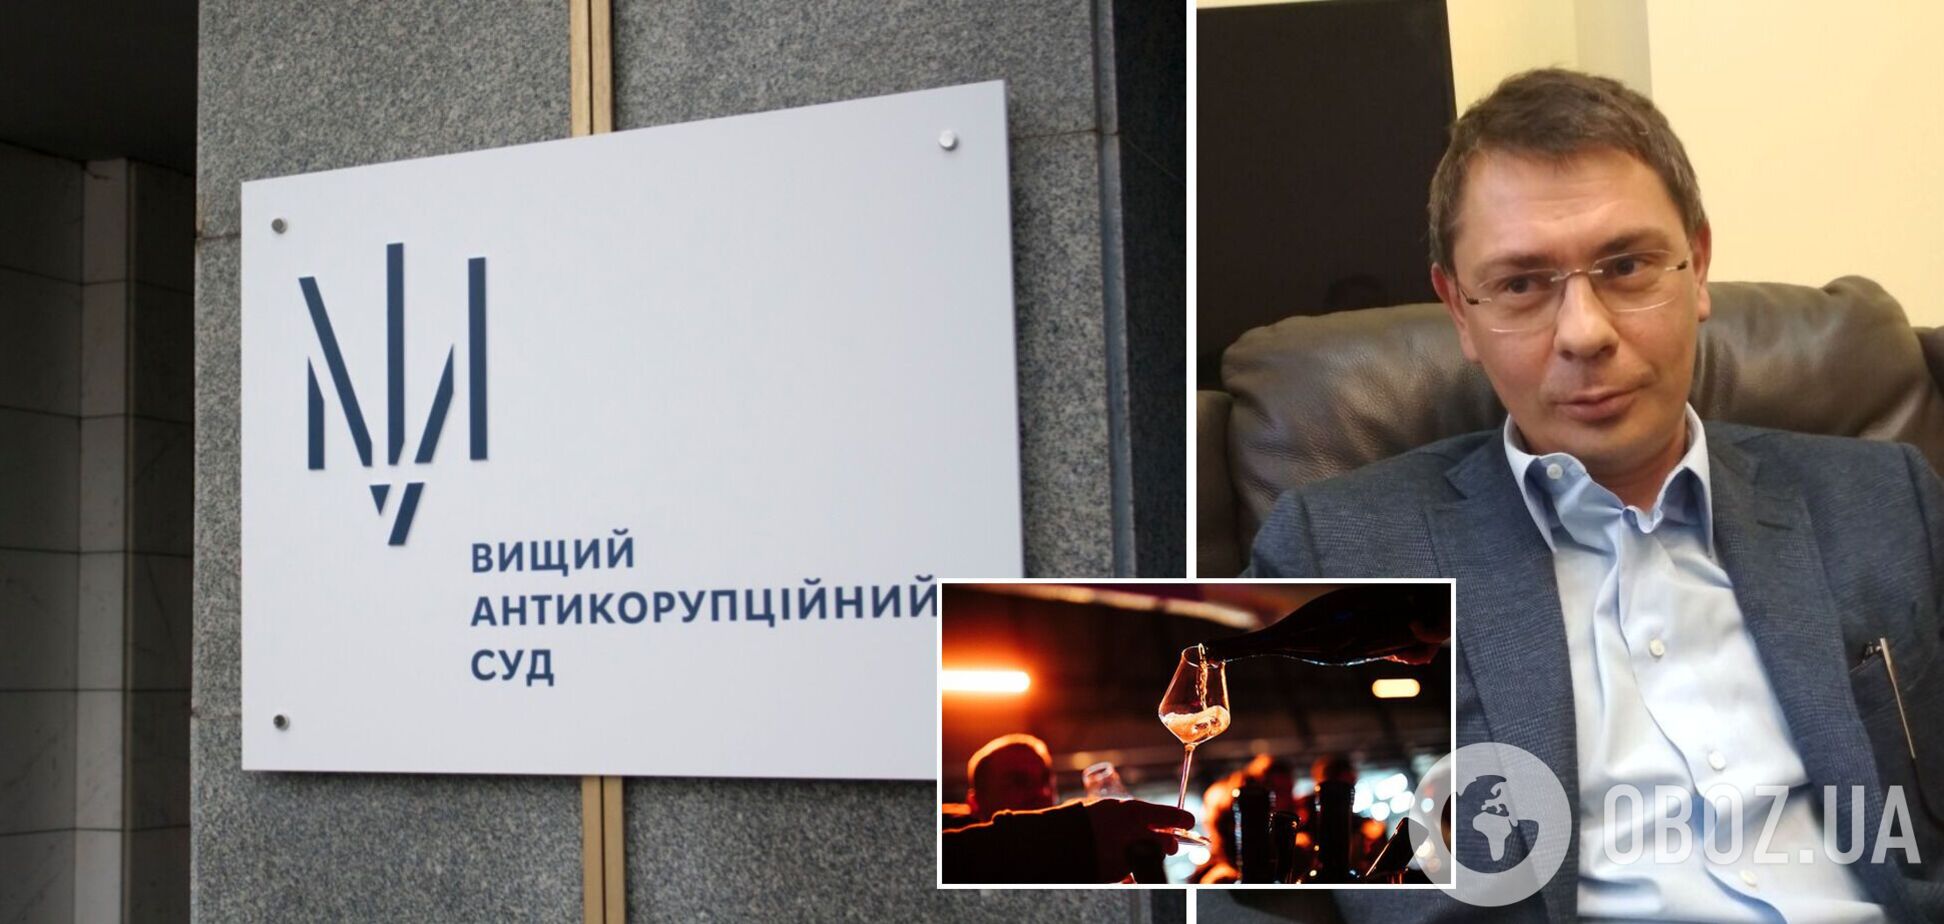 Скандальний екснардеп Крючков з'явився п'яним на засідання суду. Відео